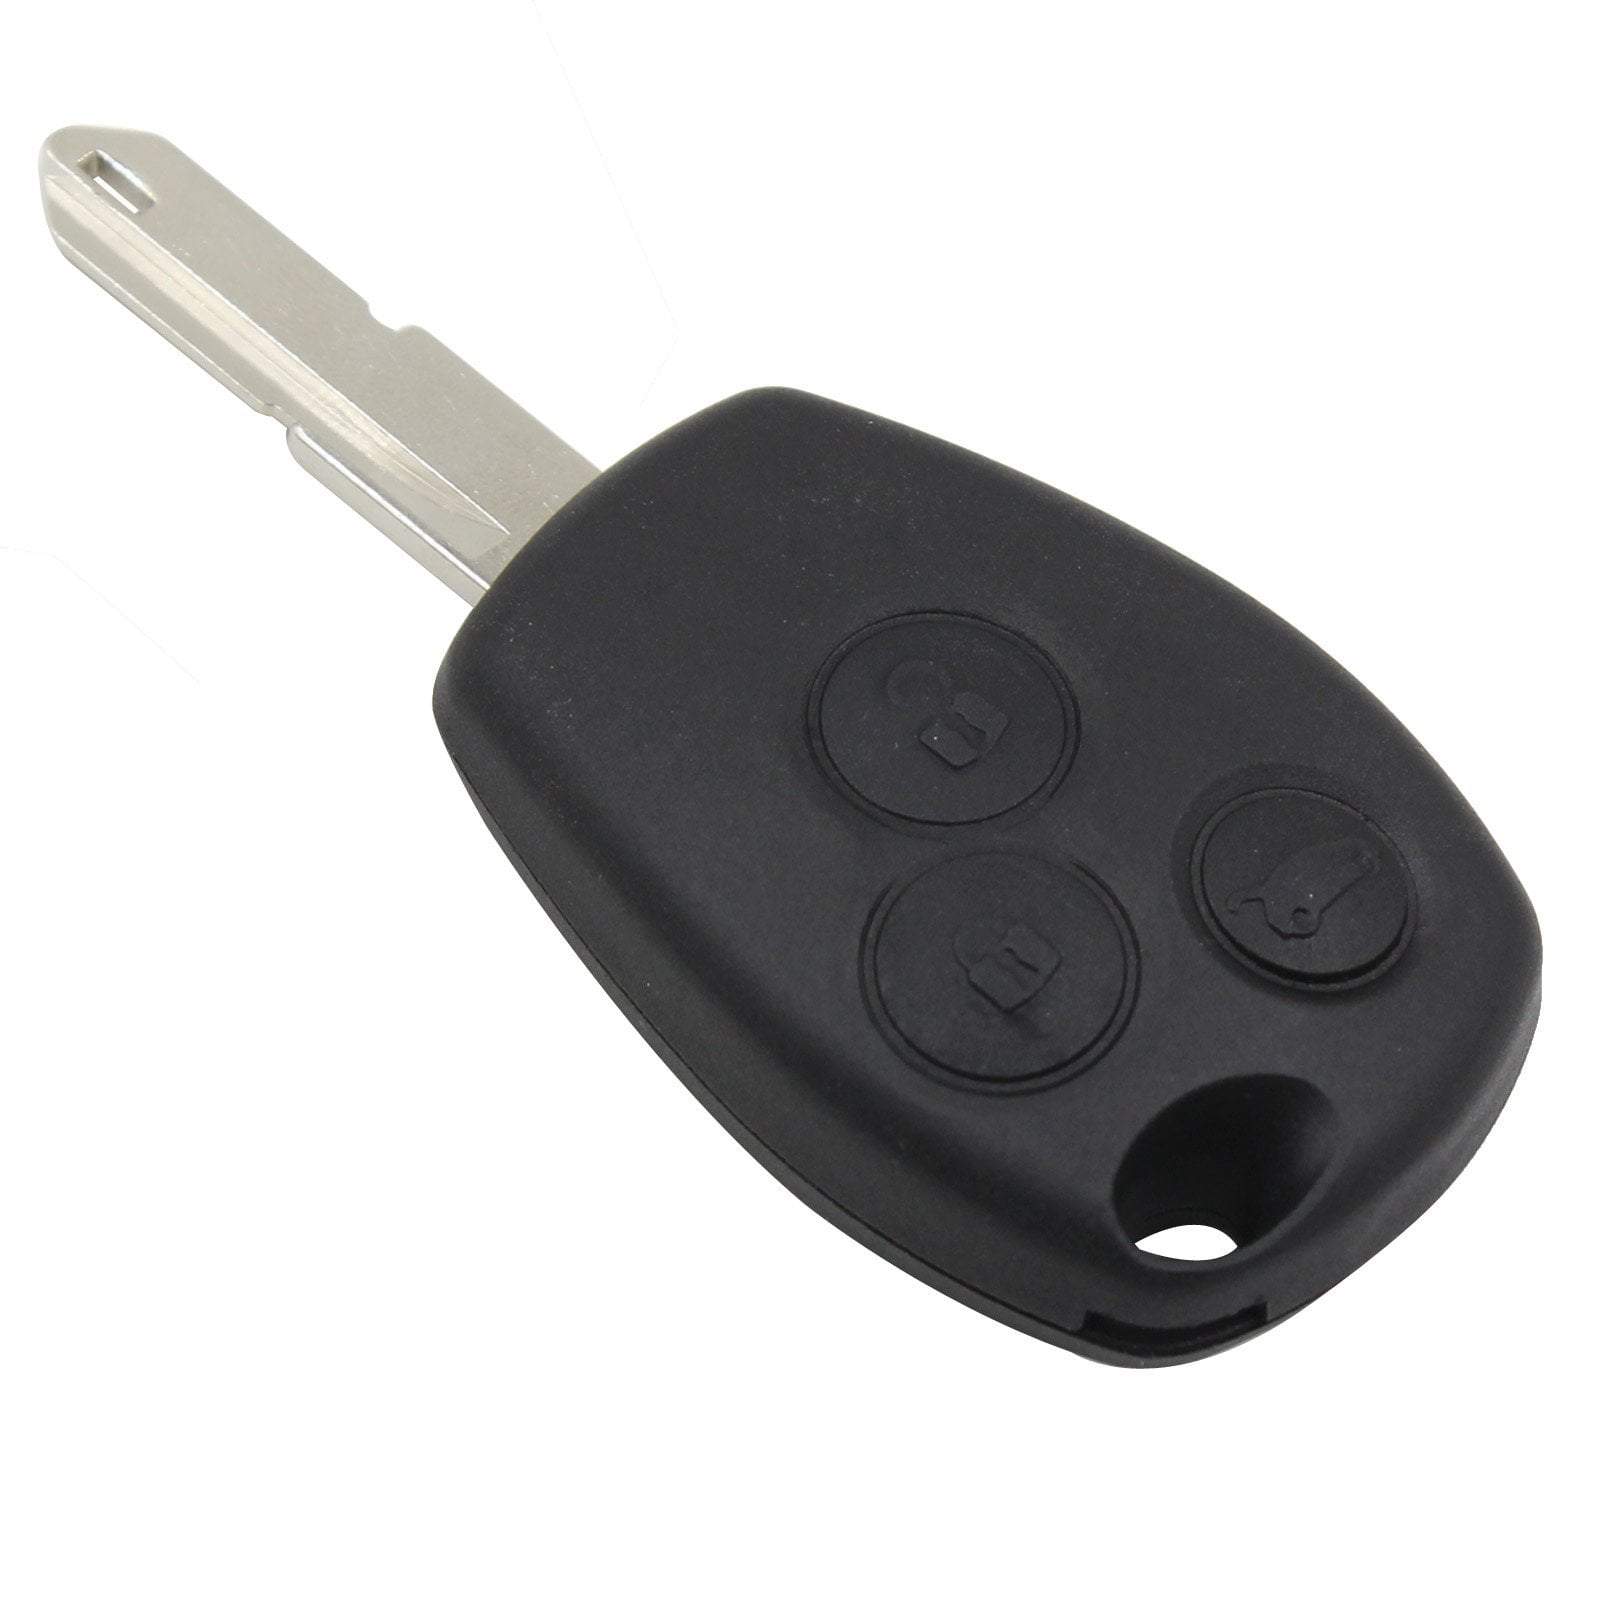 Fekete színű, 3 gombos Renault kulcs, kulcsház.